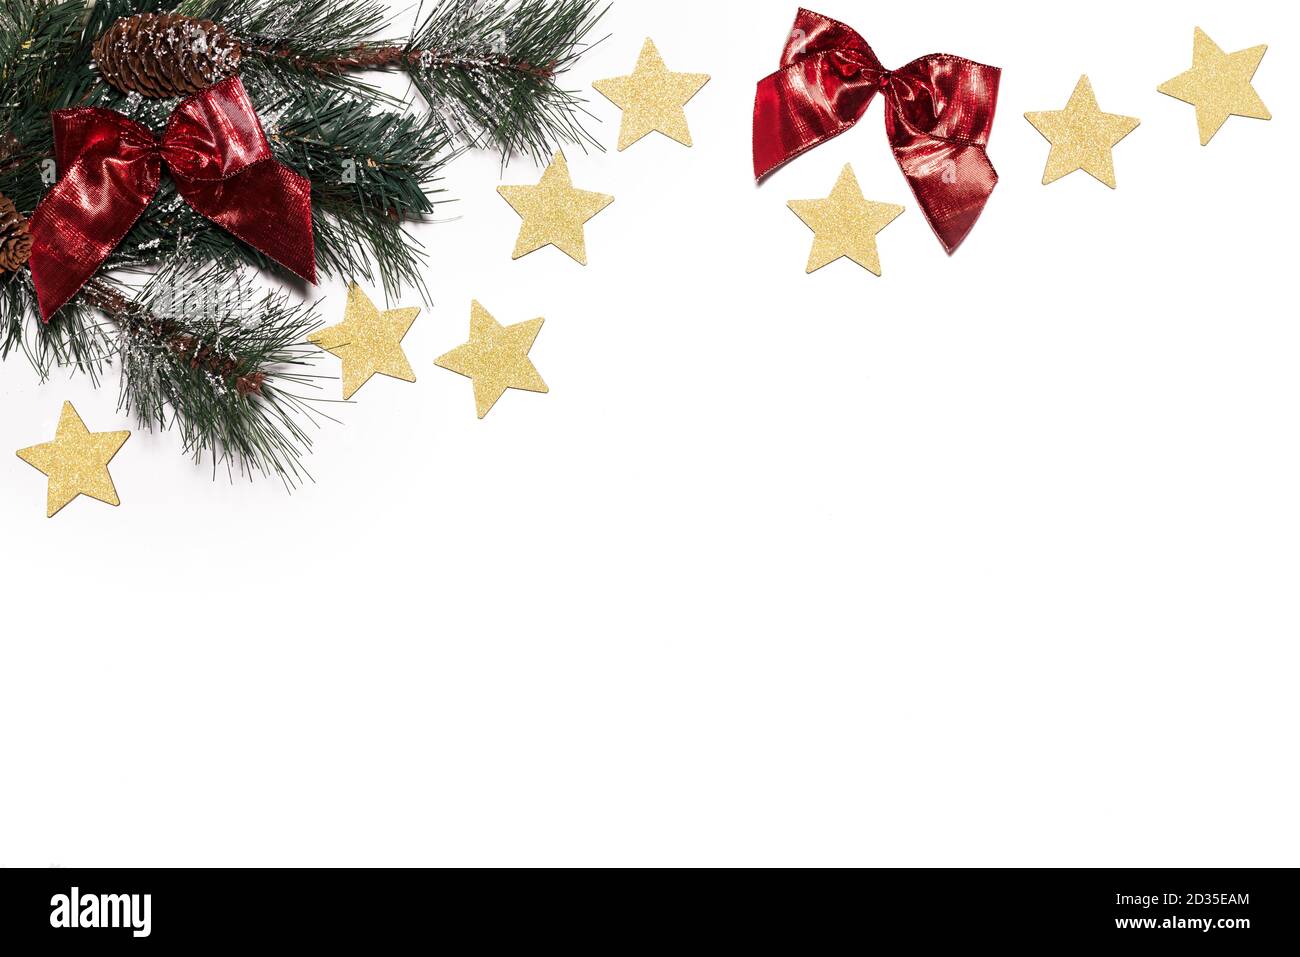 Sfondo di Natale - pino, stelle d'oro e nastri rossi su sfondo bianco - festoso, semplice Foto Stock